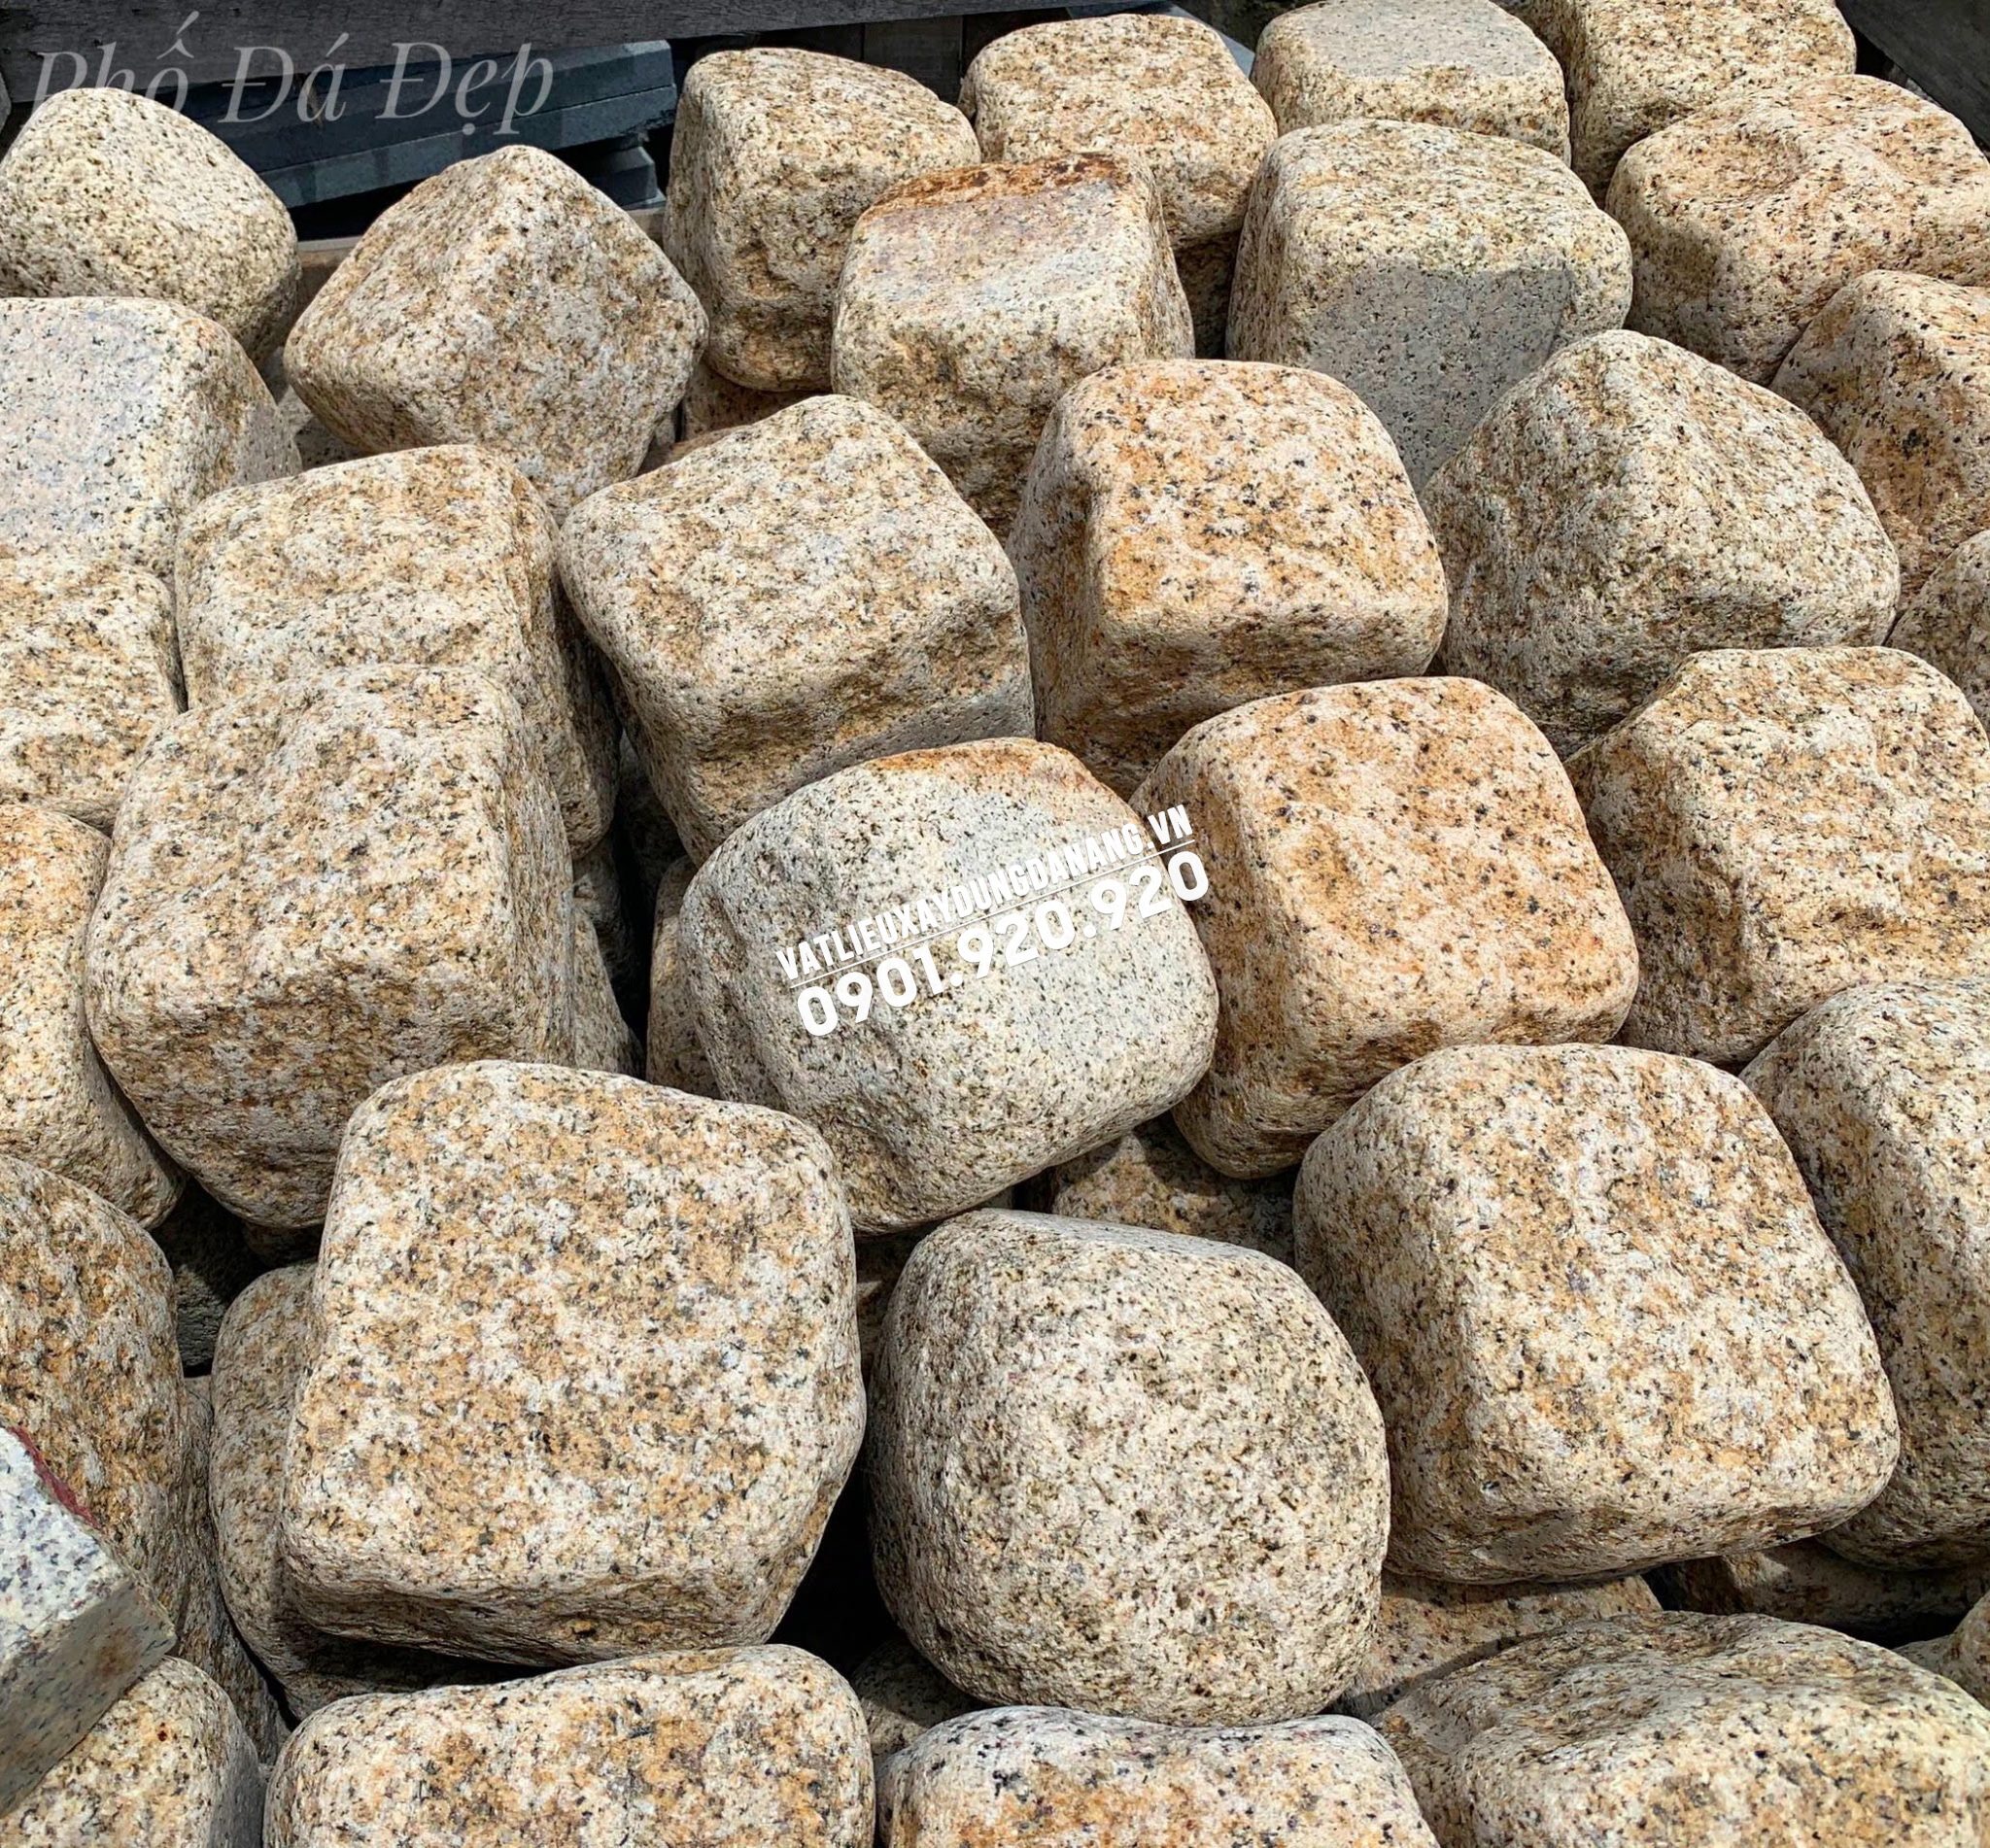 Điểm danh các mẫu đá cubic 10x10 đẹp, rẻ, bền hiện nay